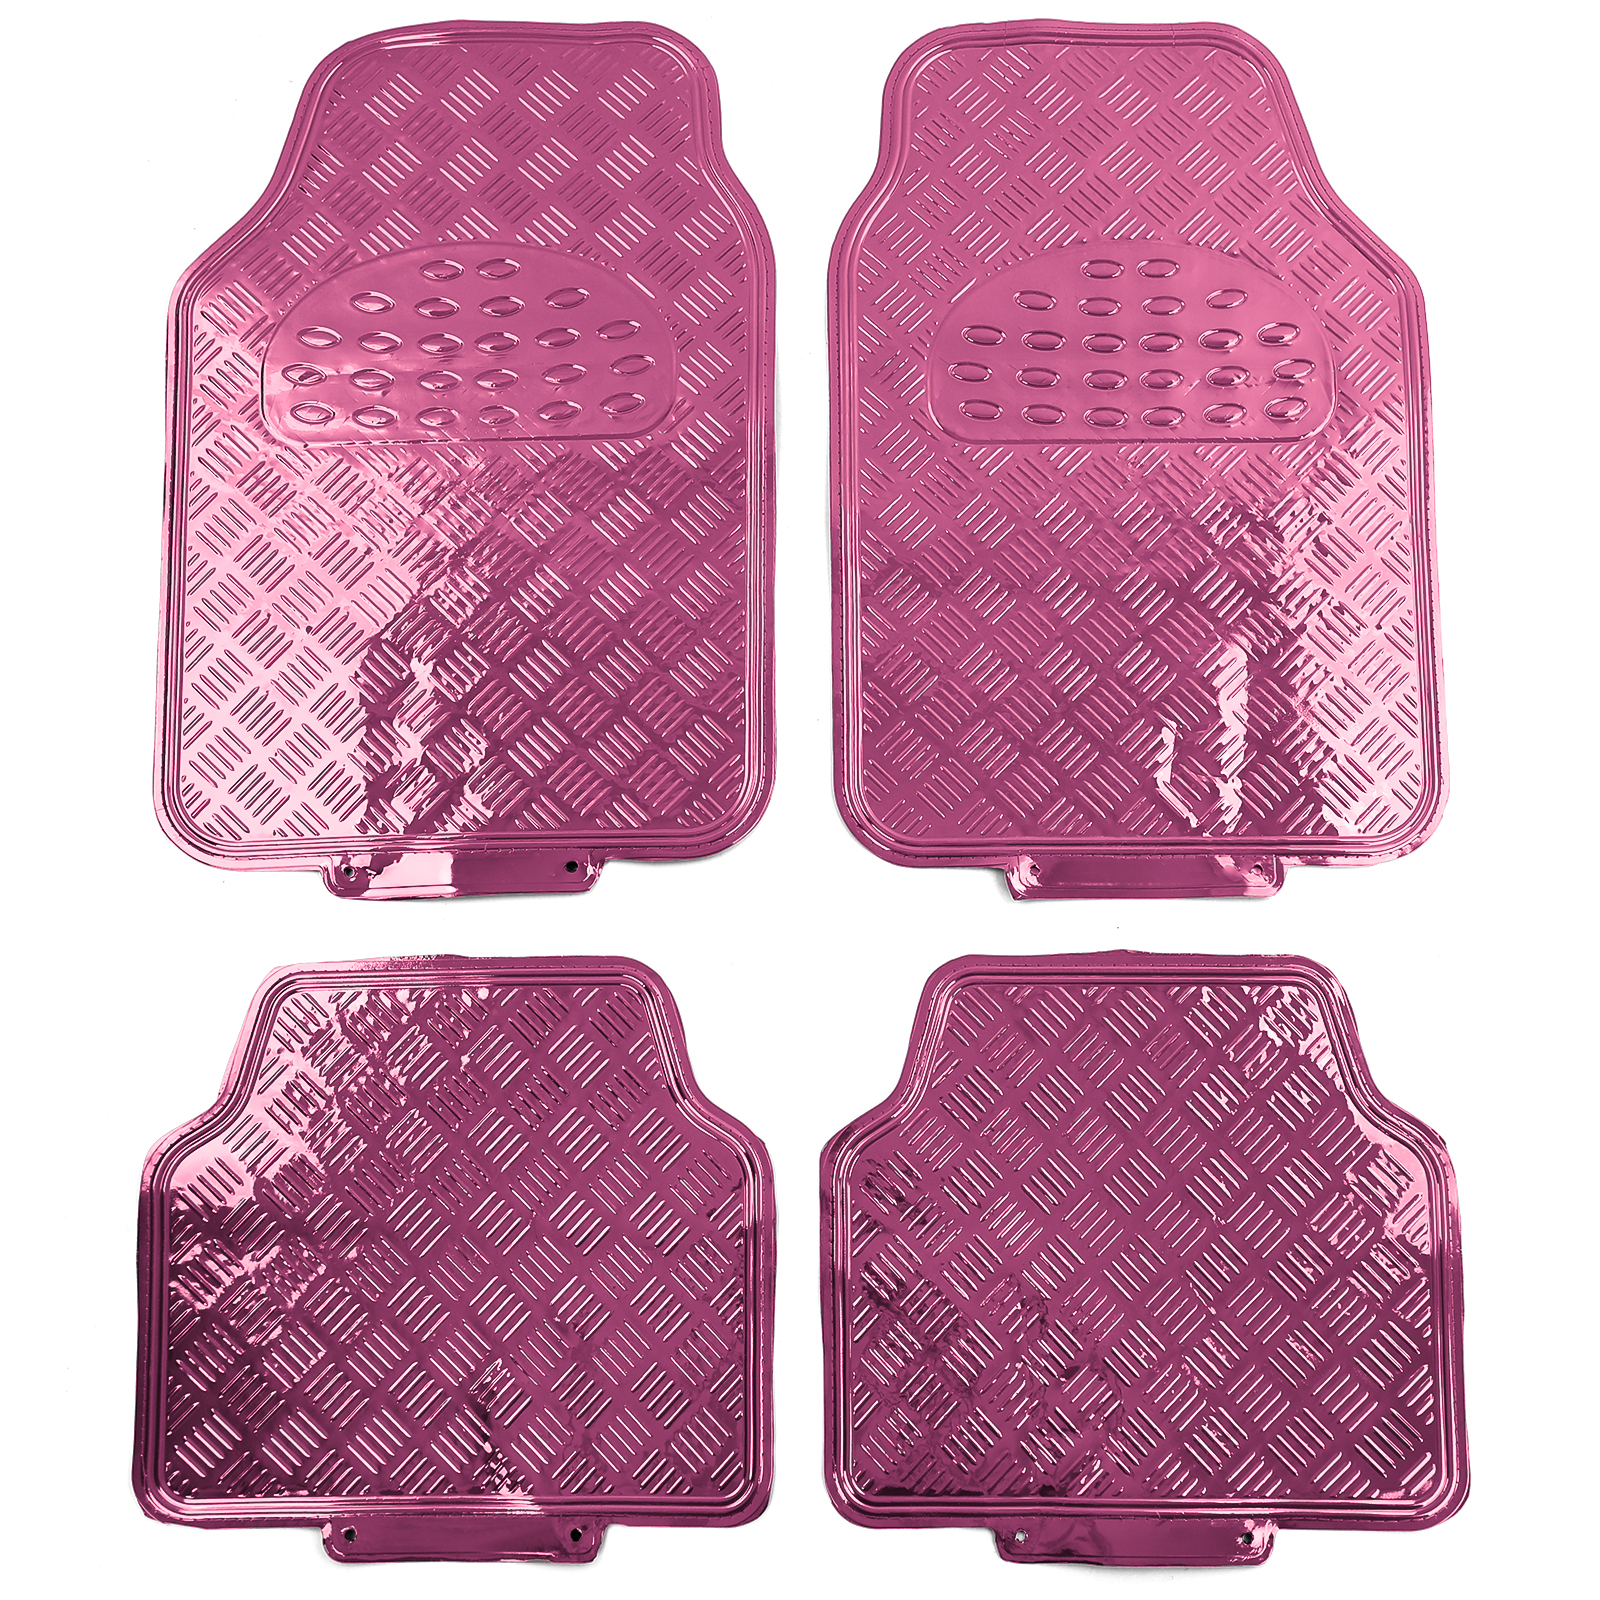 Auto Gummi Fußmatten universal Alu Riffelblech Optik 4-teilig Chrom Pink  kaufen